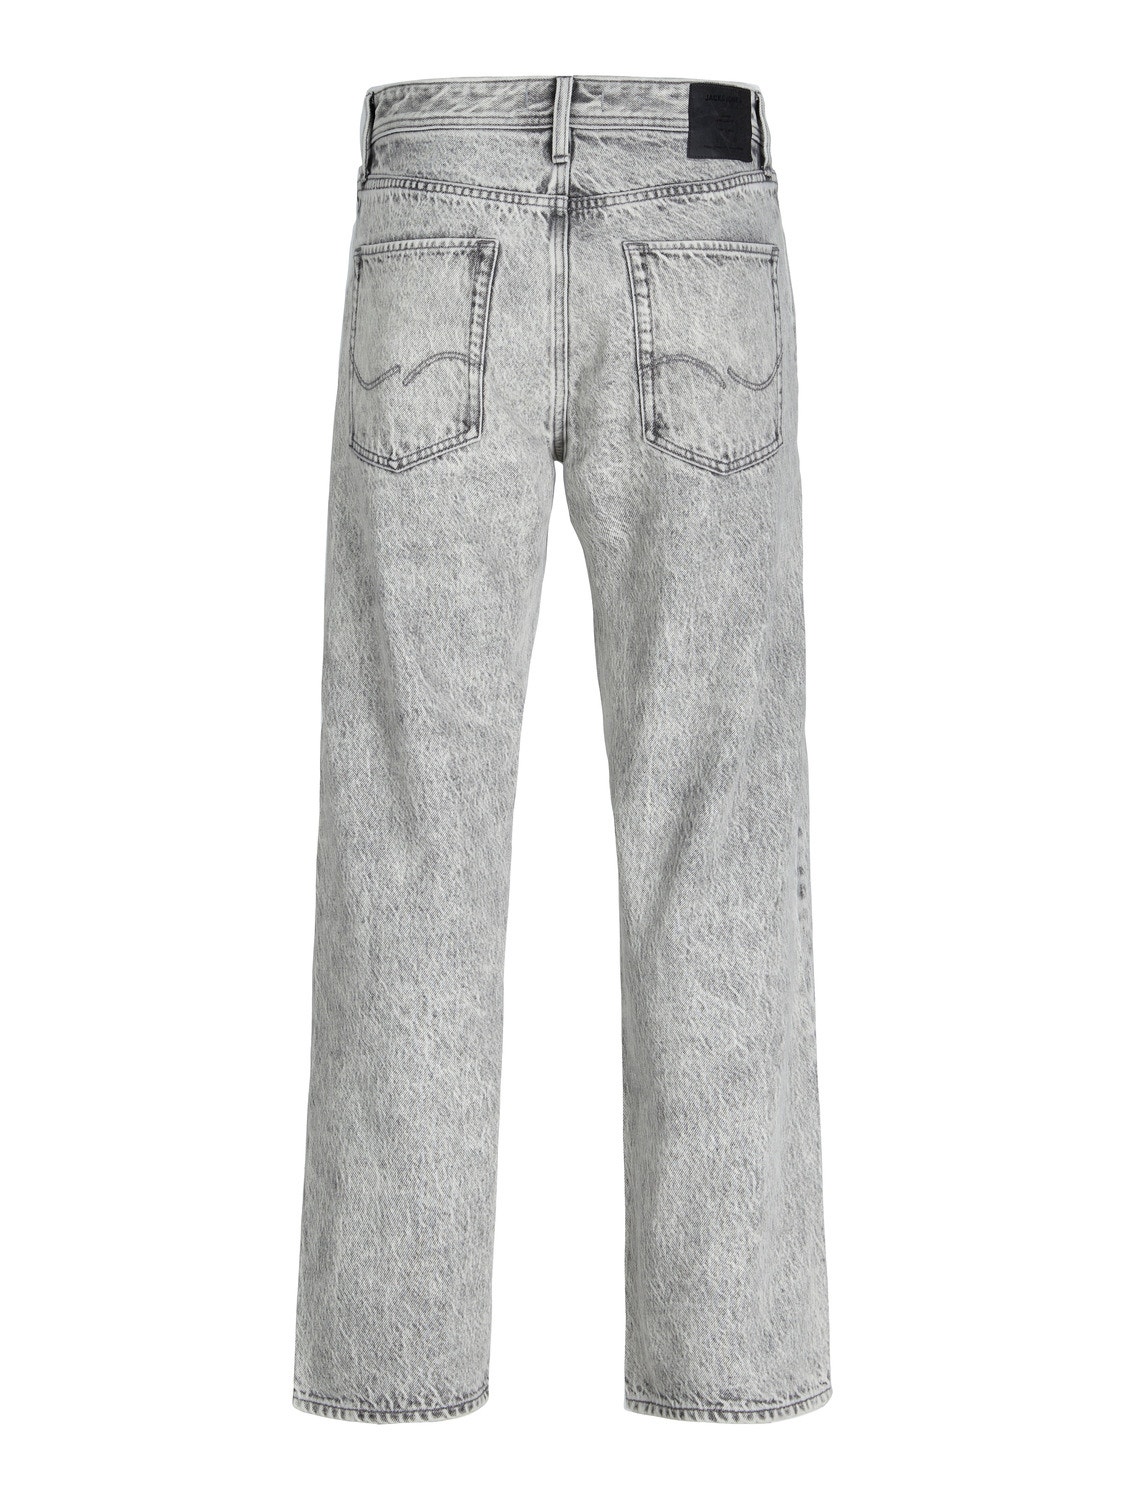 Jack & Jones EDDIE ACID WASH SBD 907 Jeans Loose fit -Grey Denim - 12254471